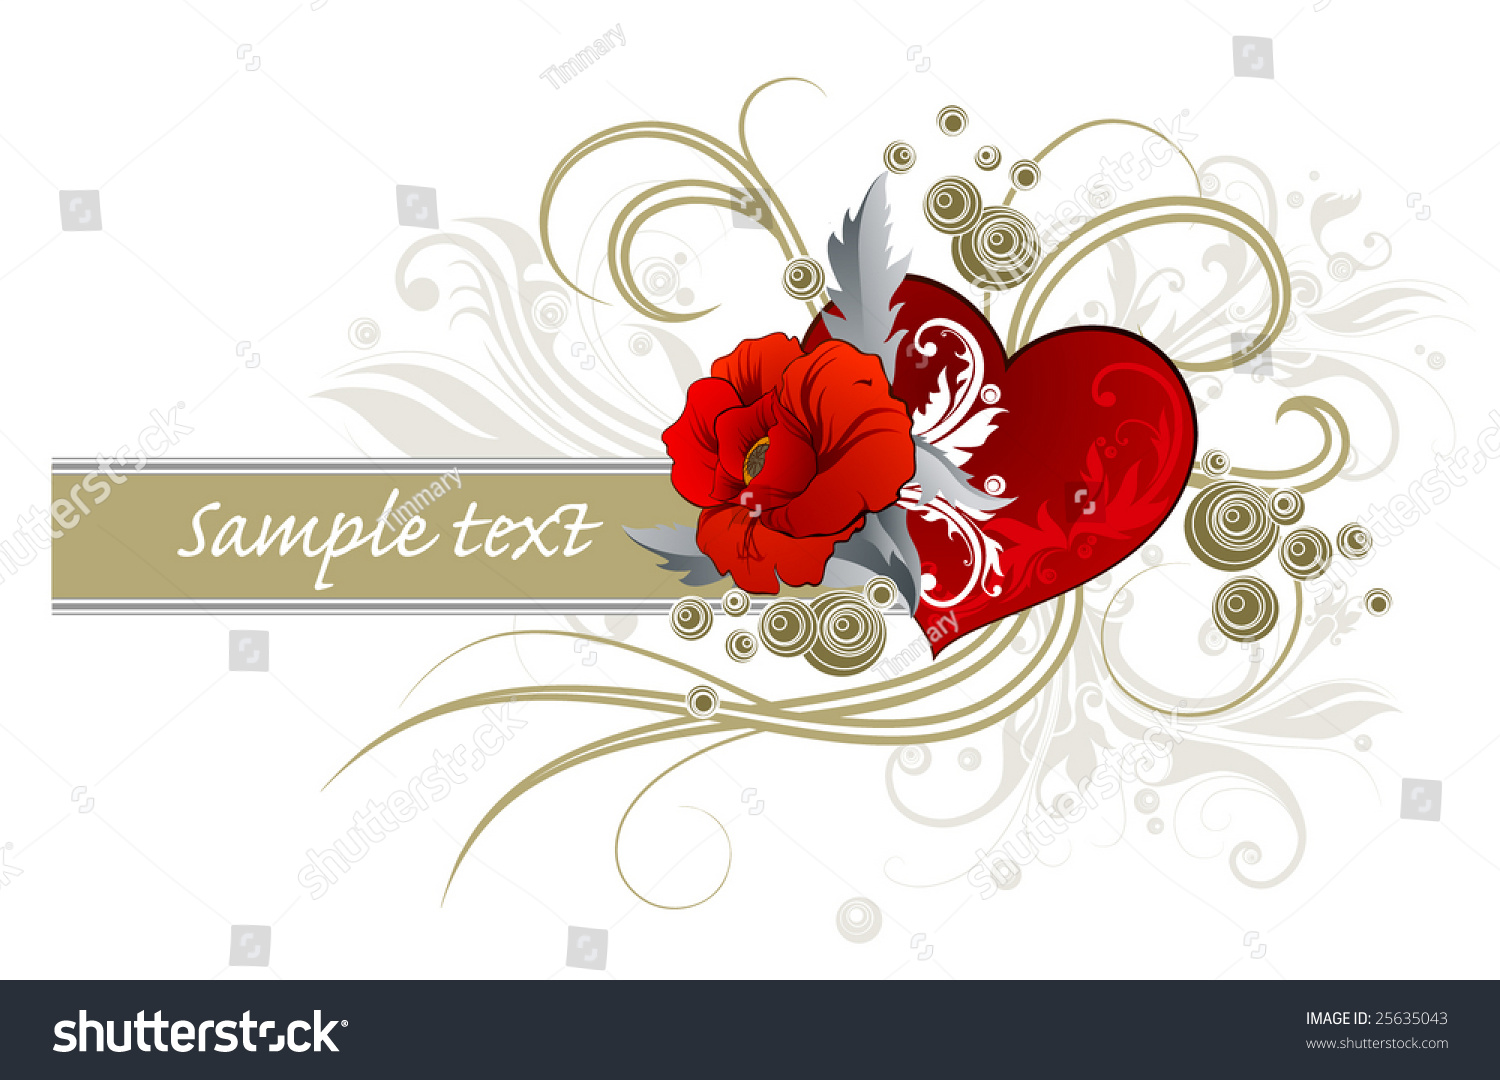 Flower And Heart Stock Vector Illustration 25635043 : Shutterstock